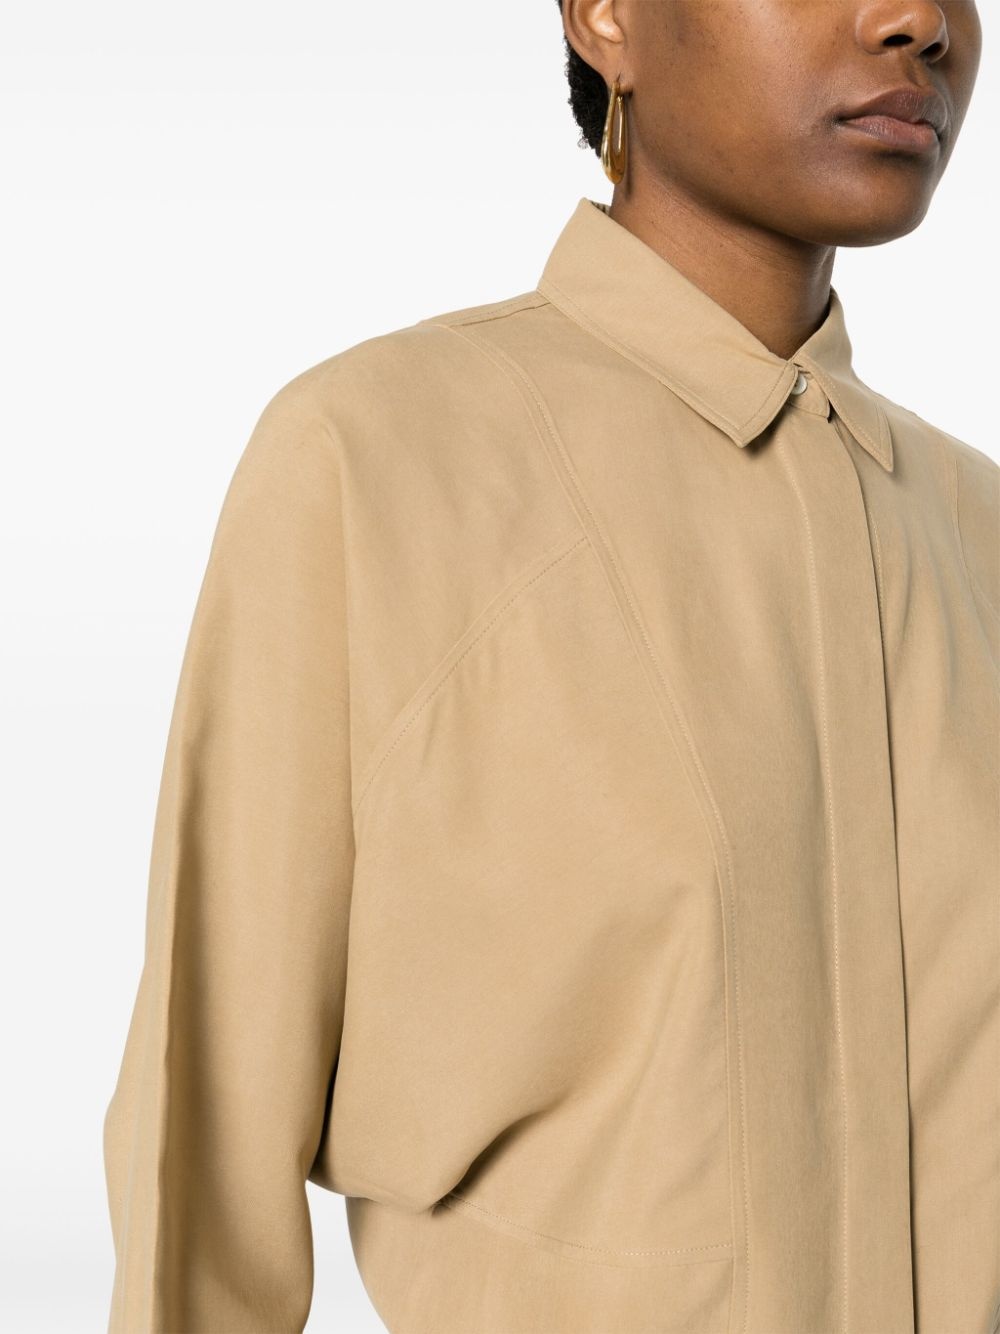 panelled silk shirt - 5